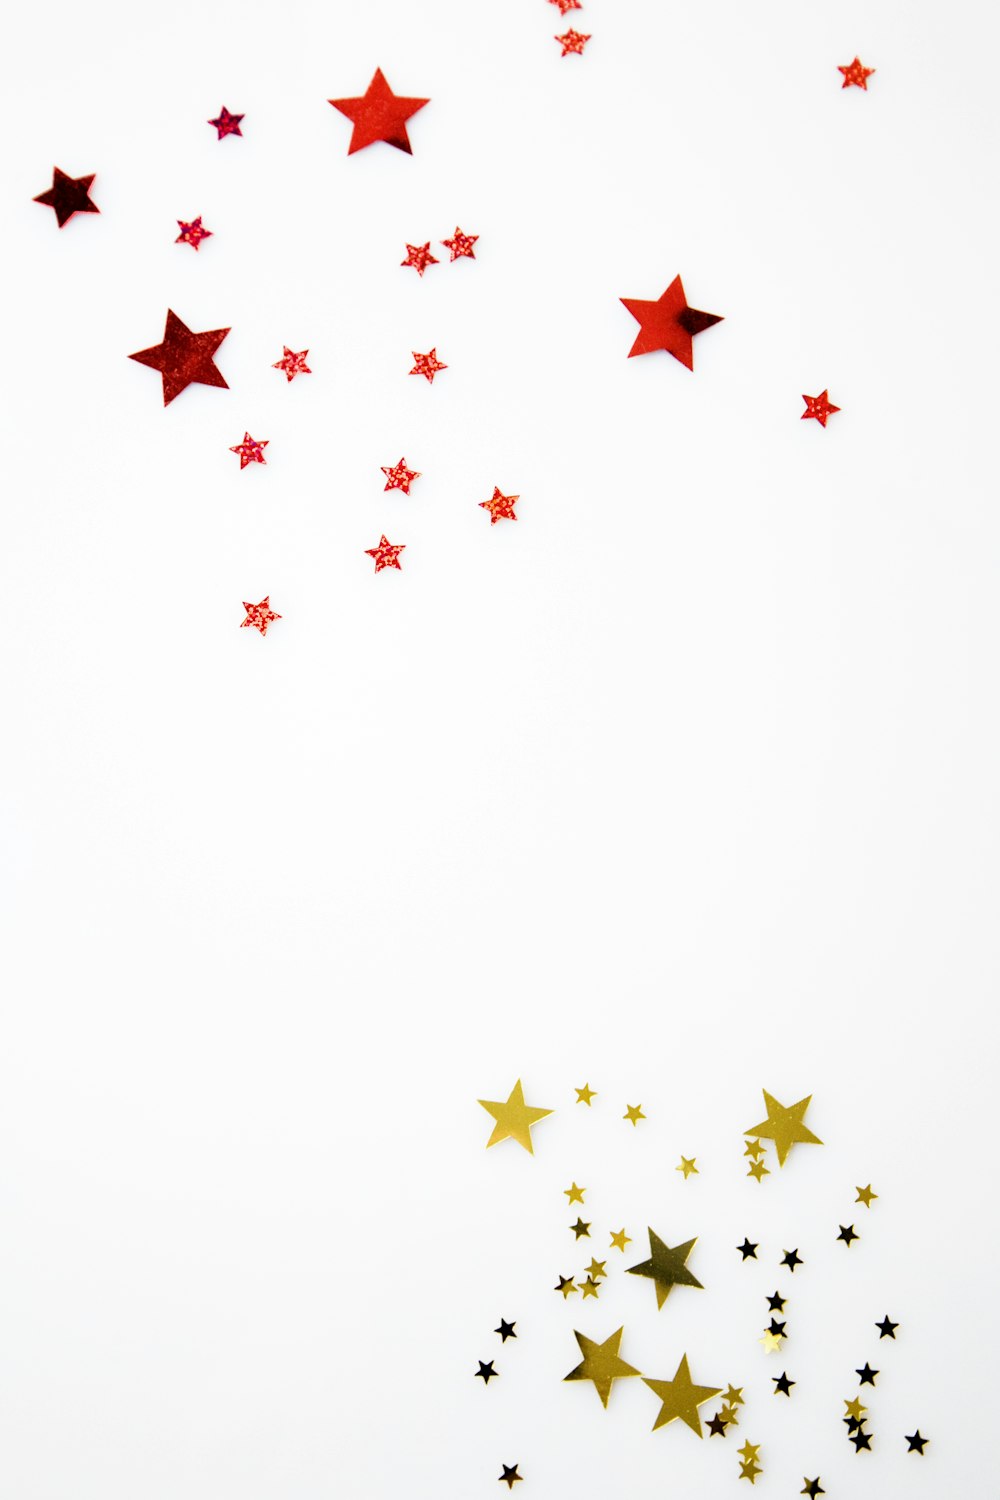 Ilustración de estrella roja y amarilla